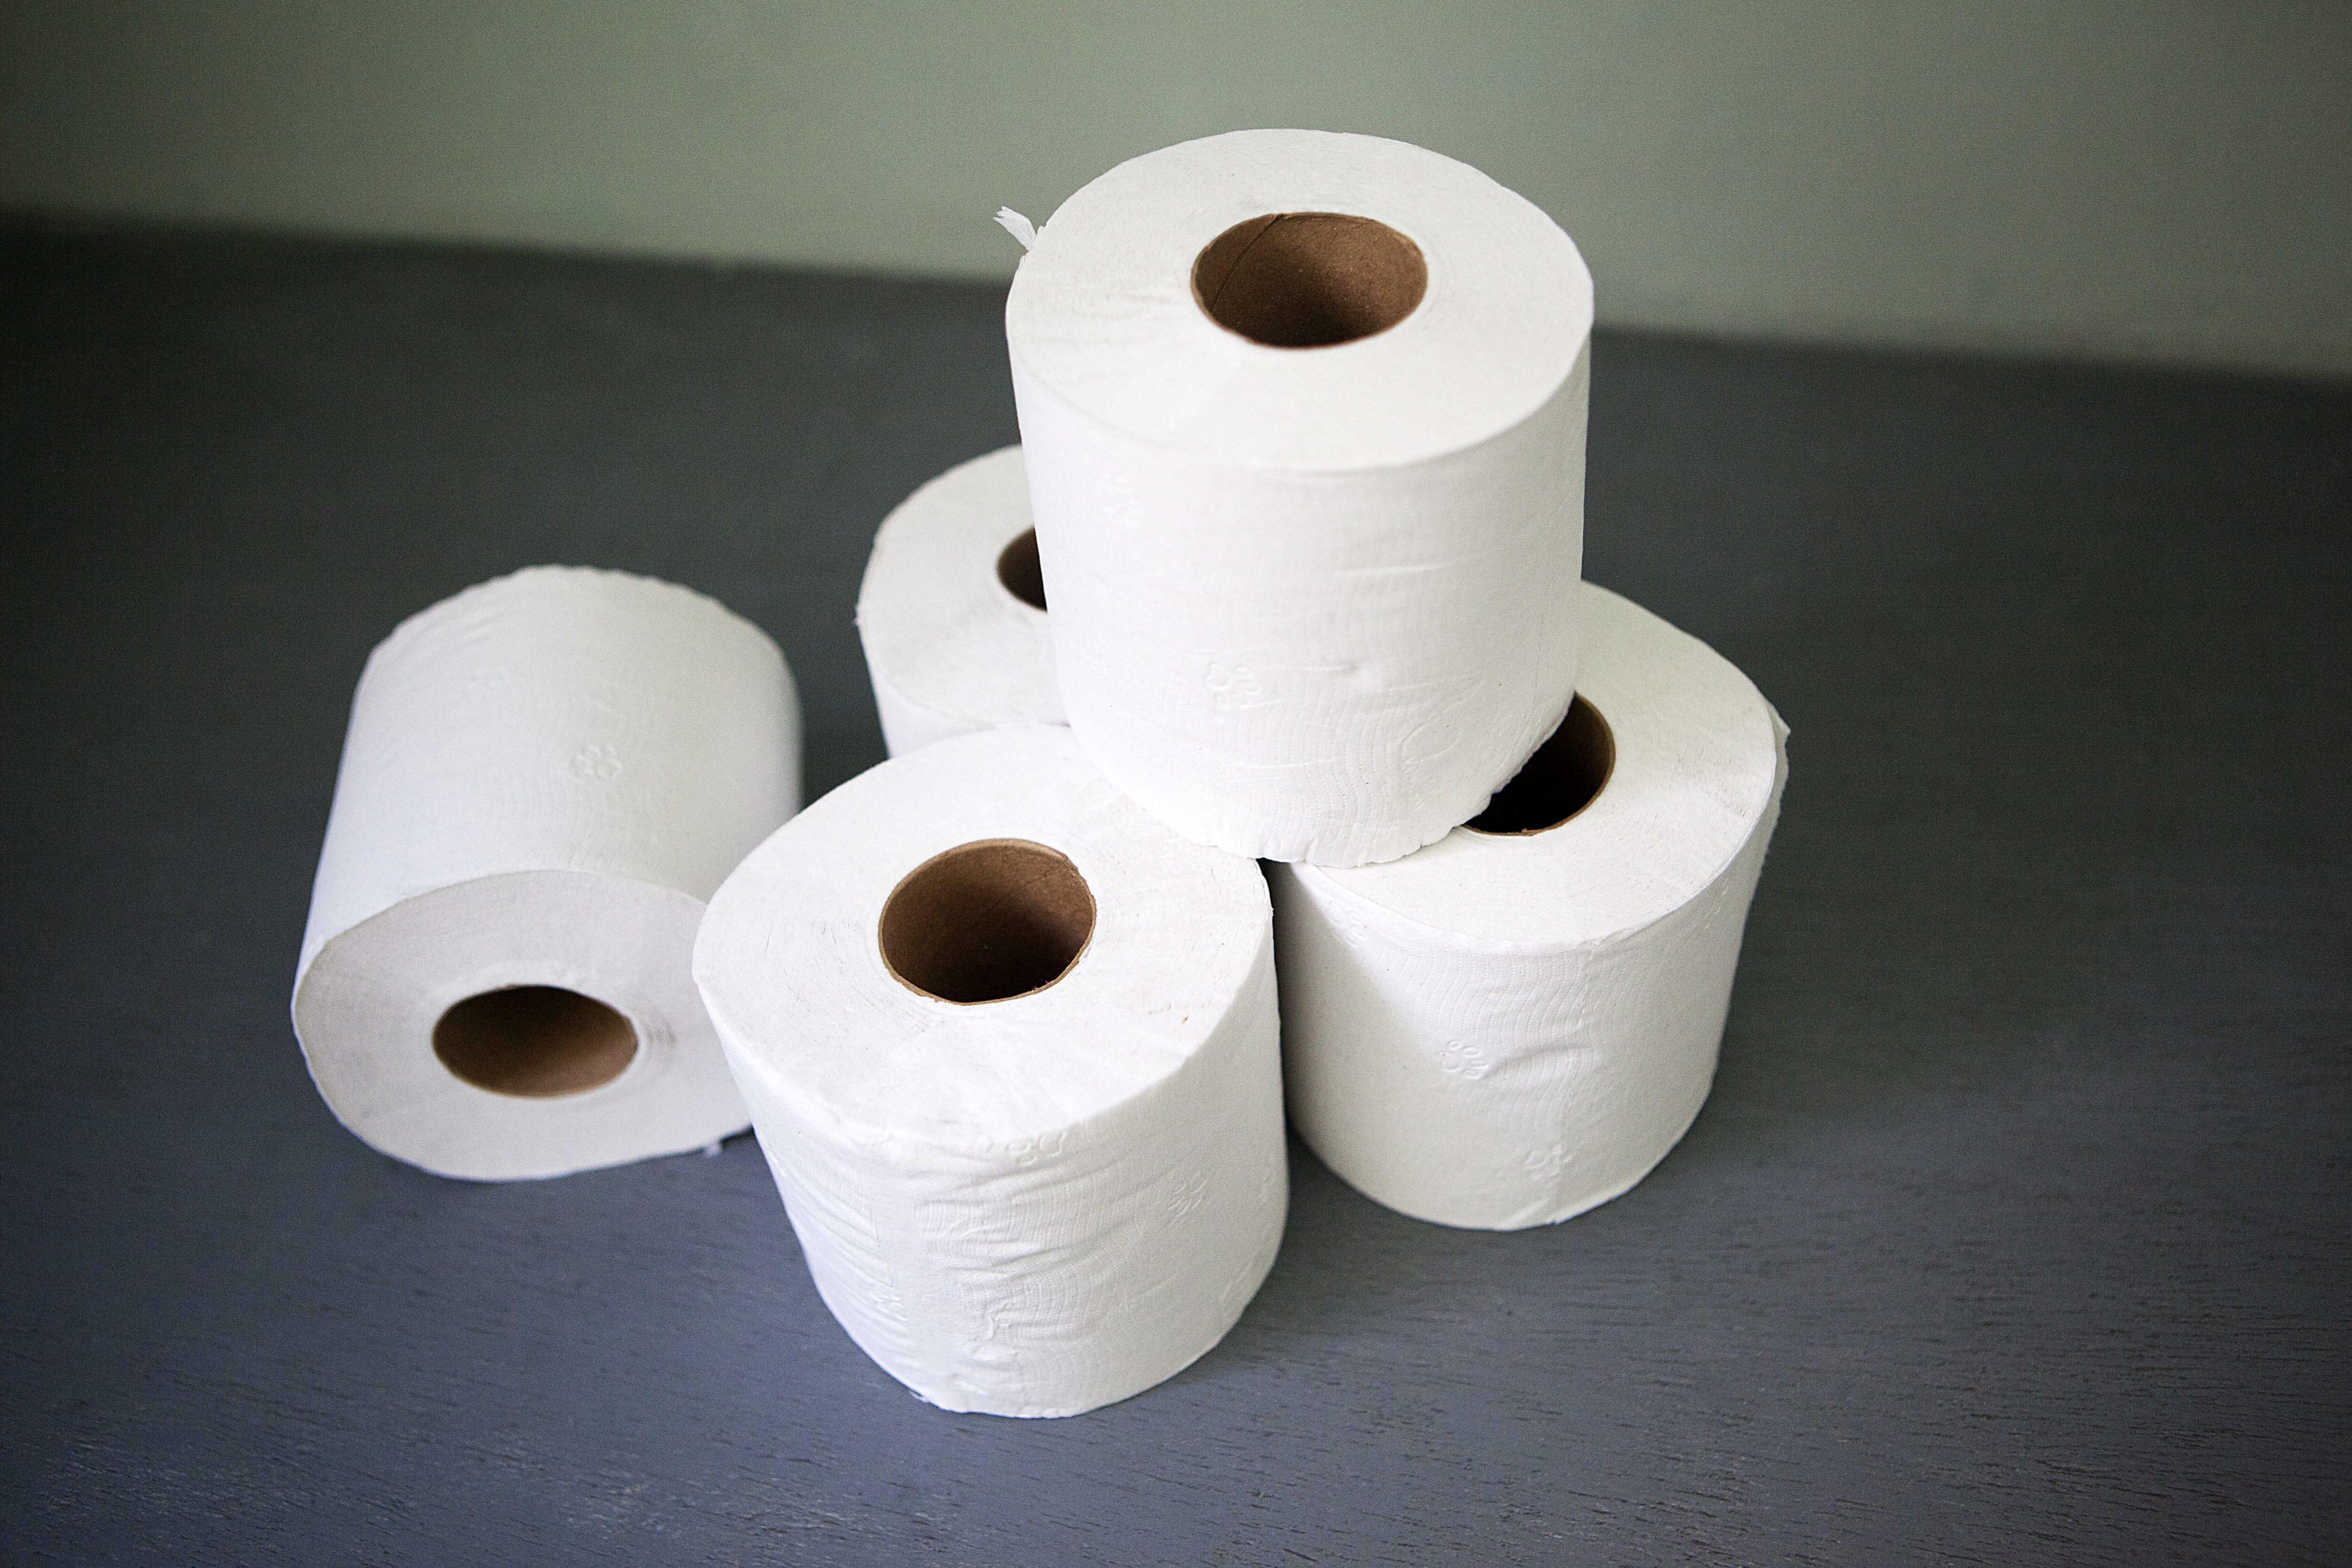 Foto de referencia: Rollos de papel higiénico (EFE/Painsa)